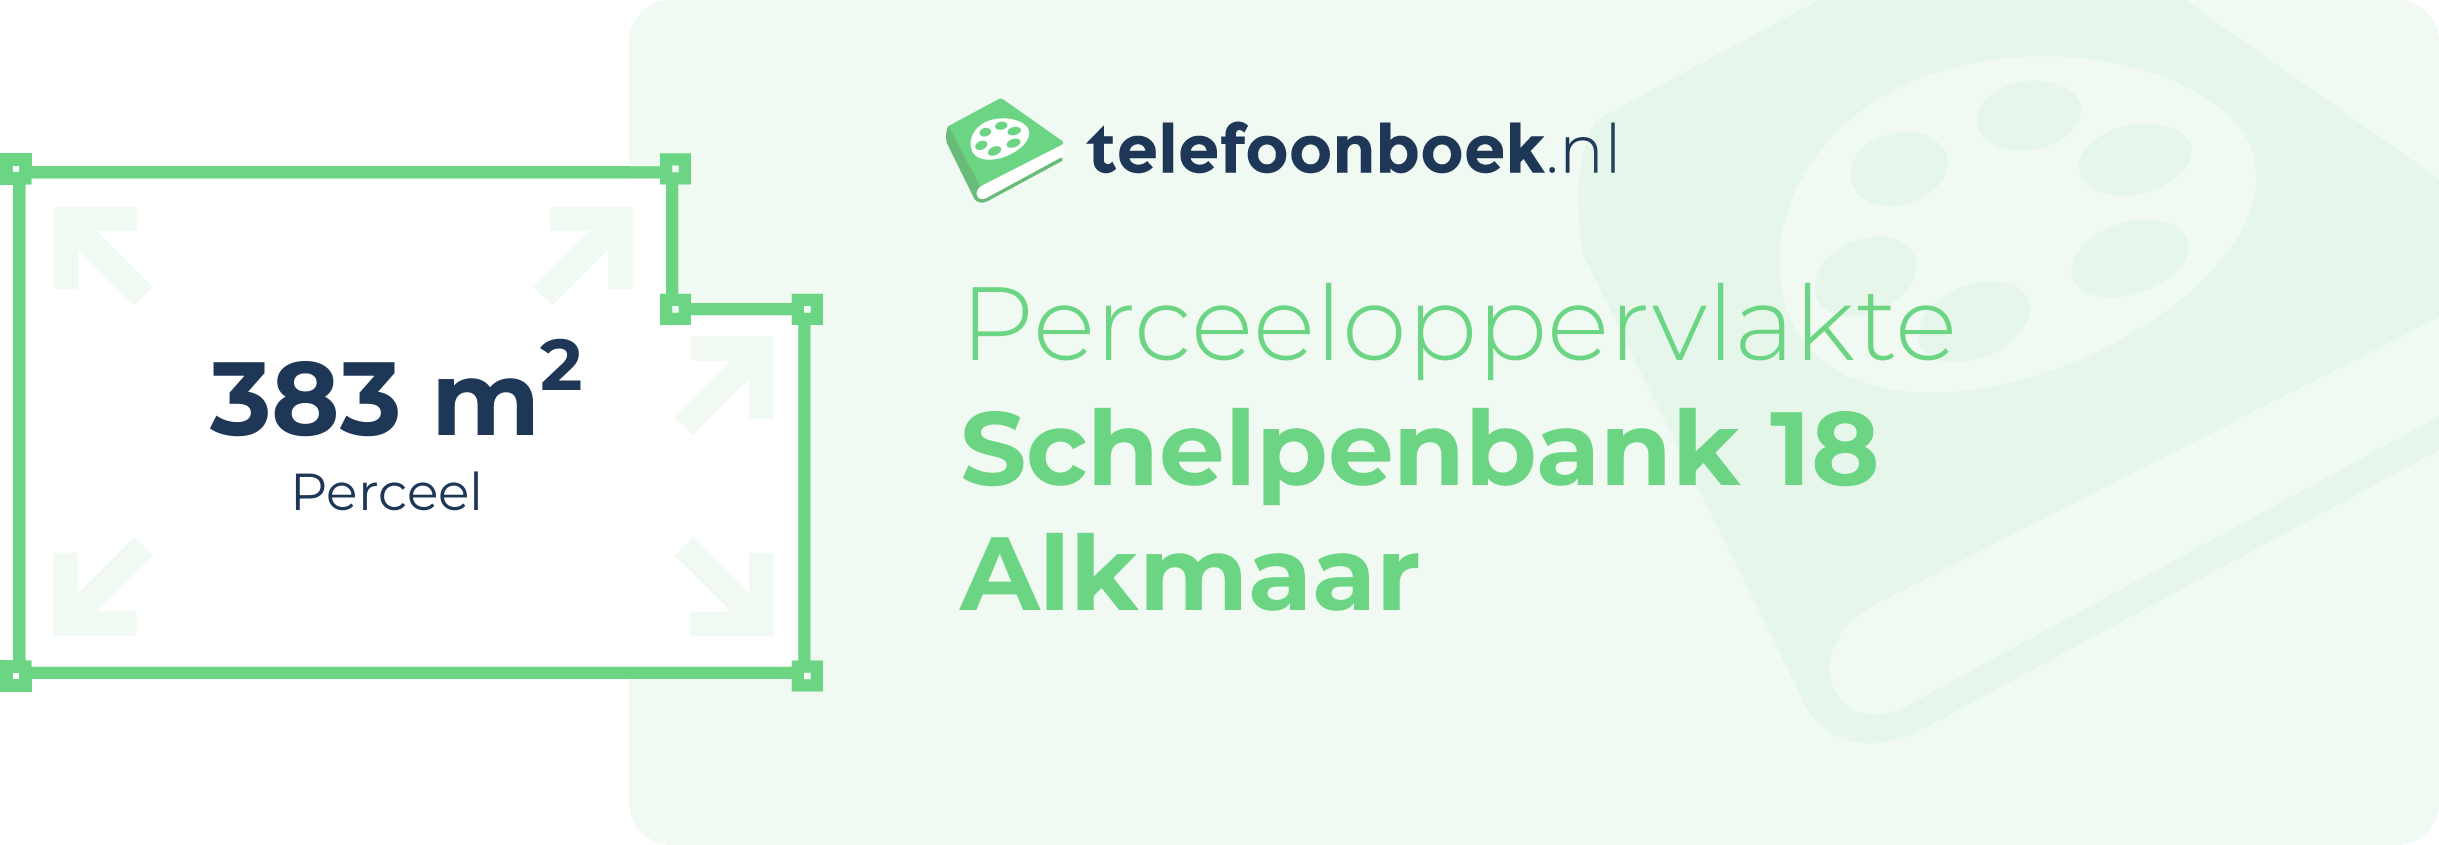 Perceeloppervlakte Schelpenbank 18 Alkmaar